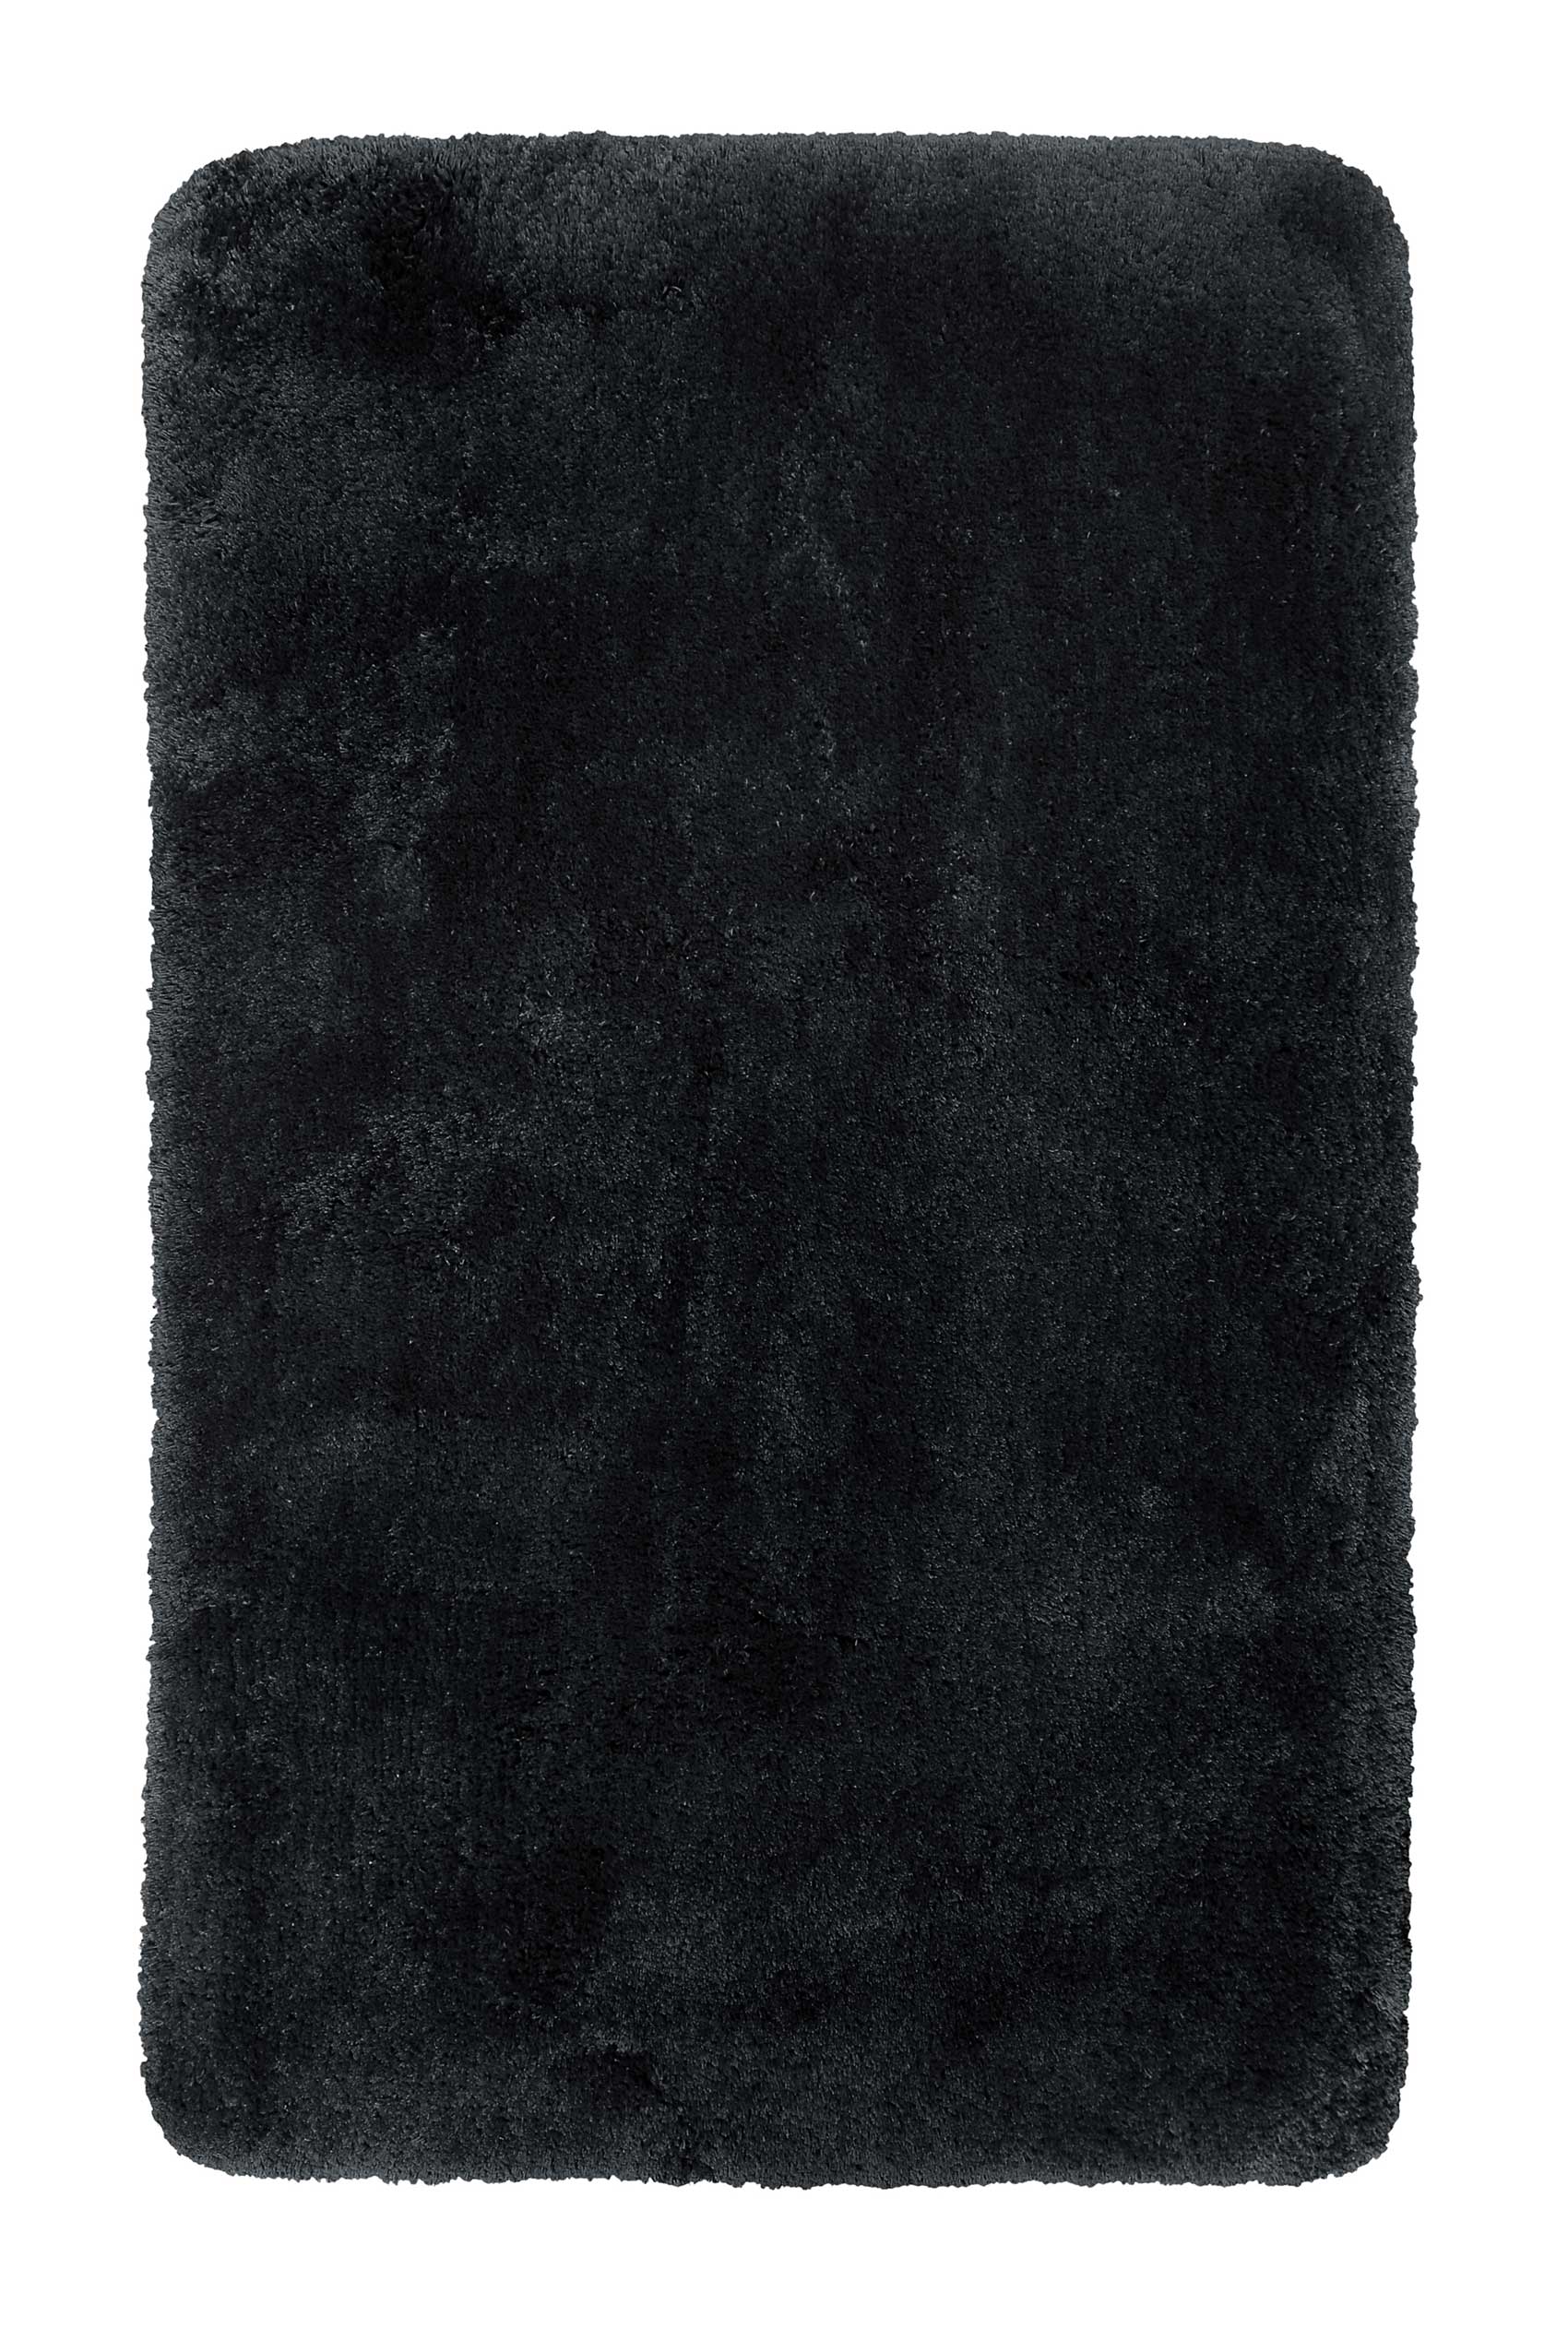 tapis de bain microfibre très doux uni noir 60x100